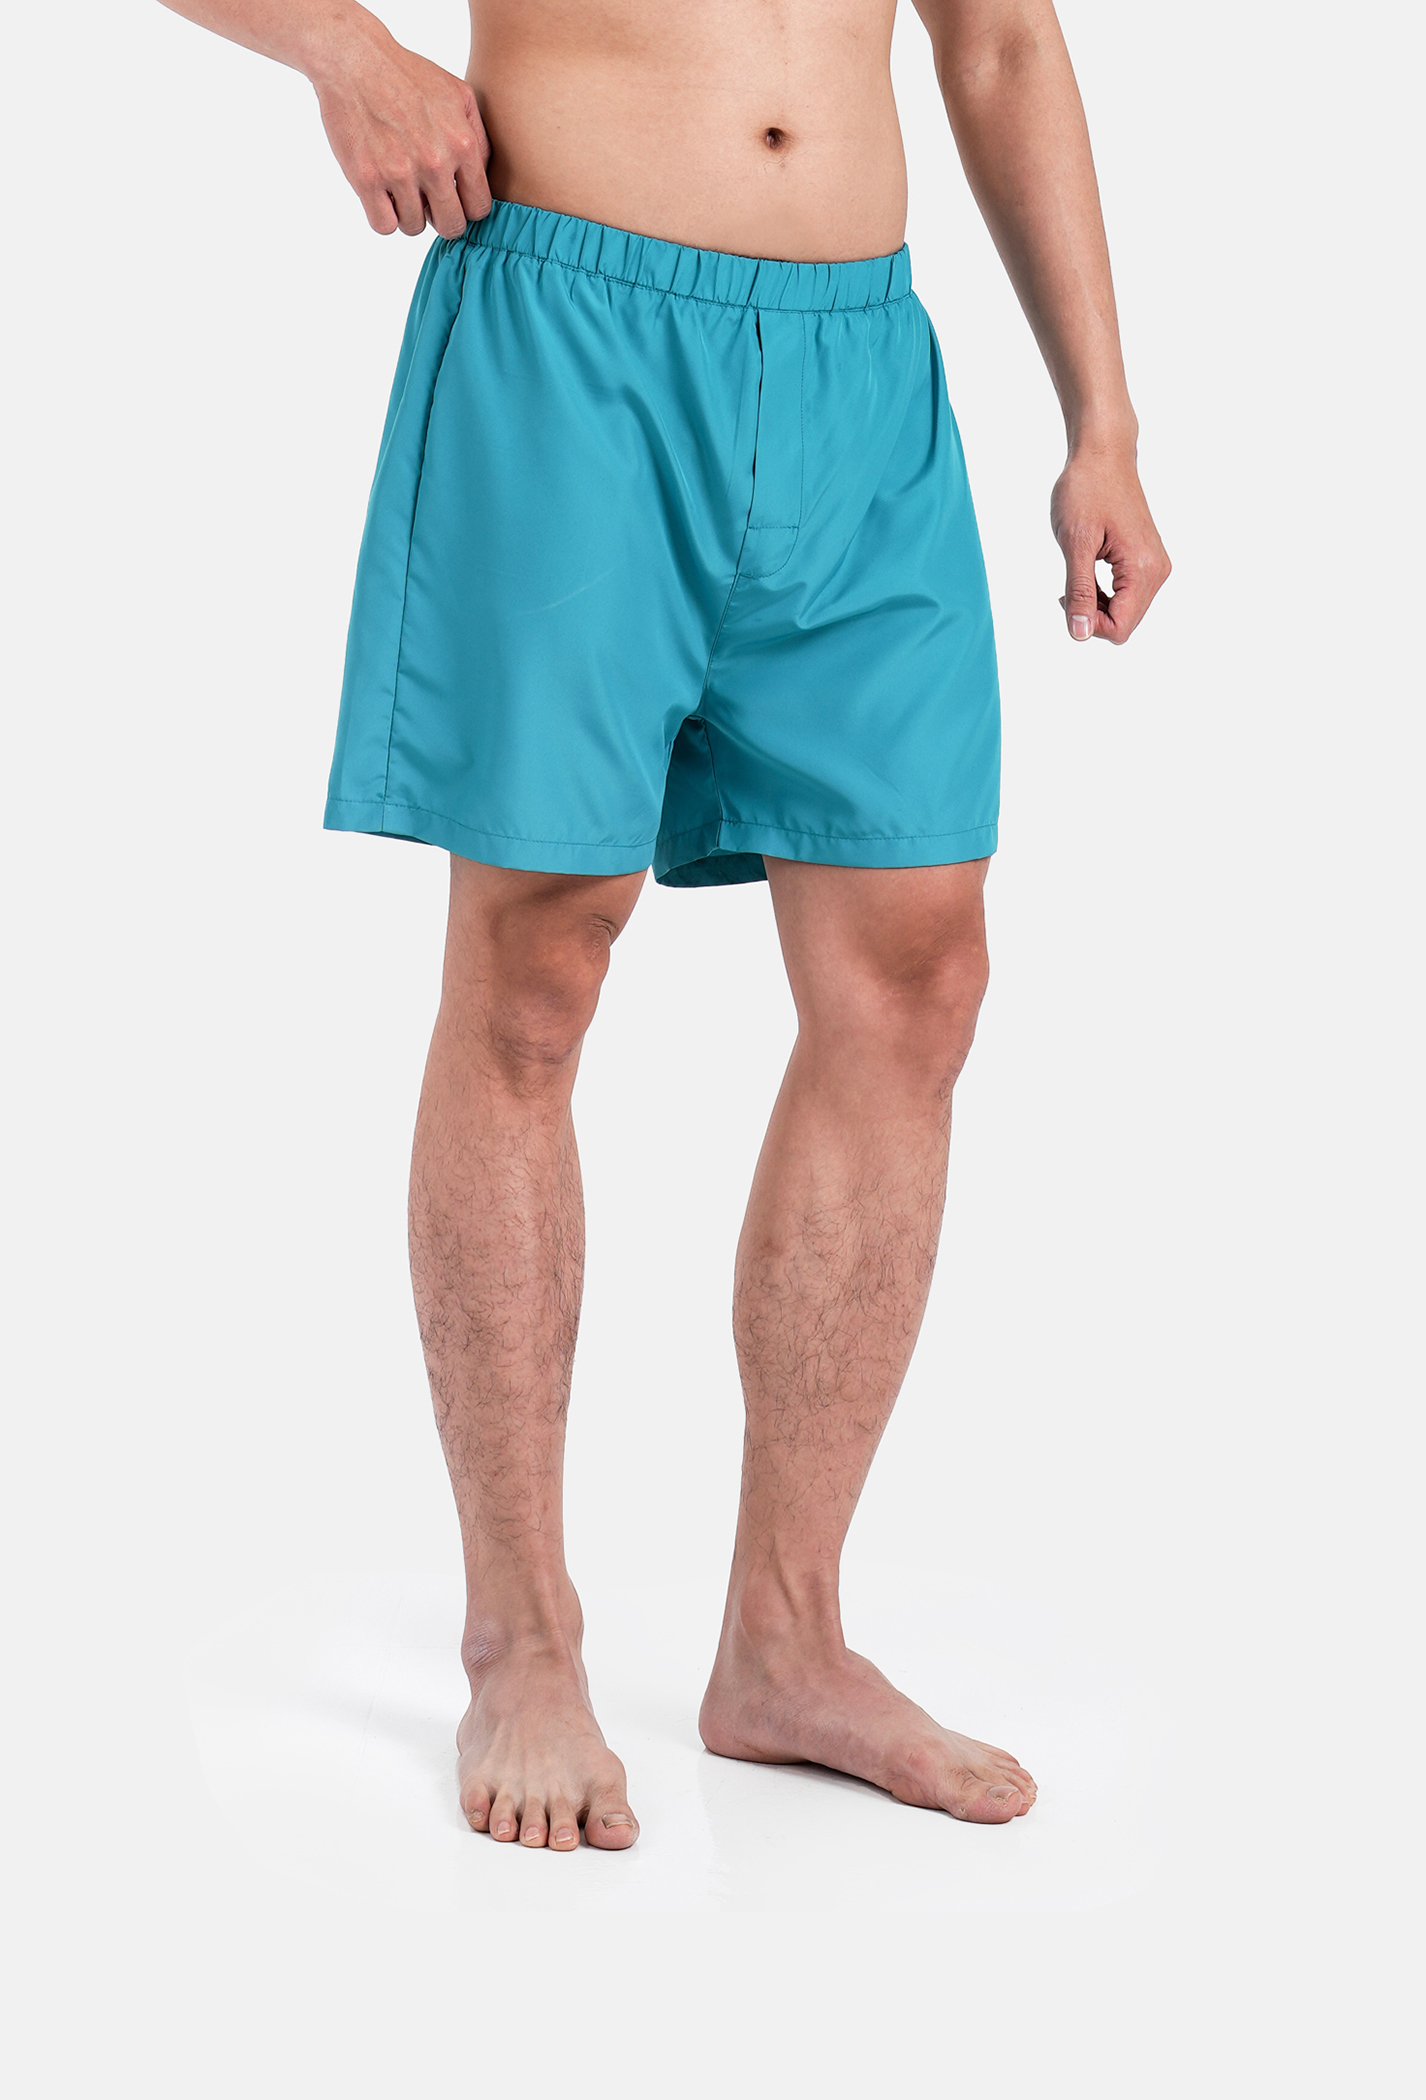 FLASH SALE - Quần Shorts mặc nhà Coolmate Basics  Xanh ngọc 2